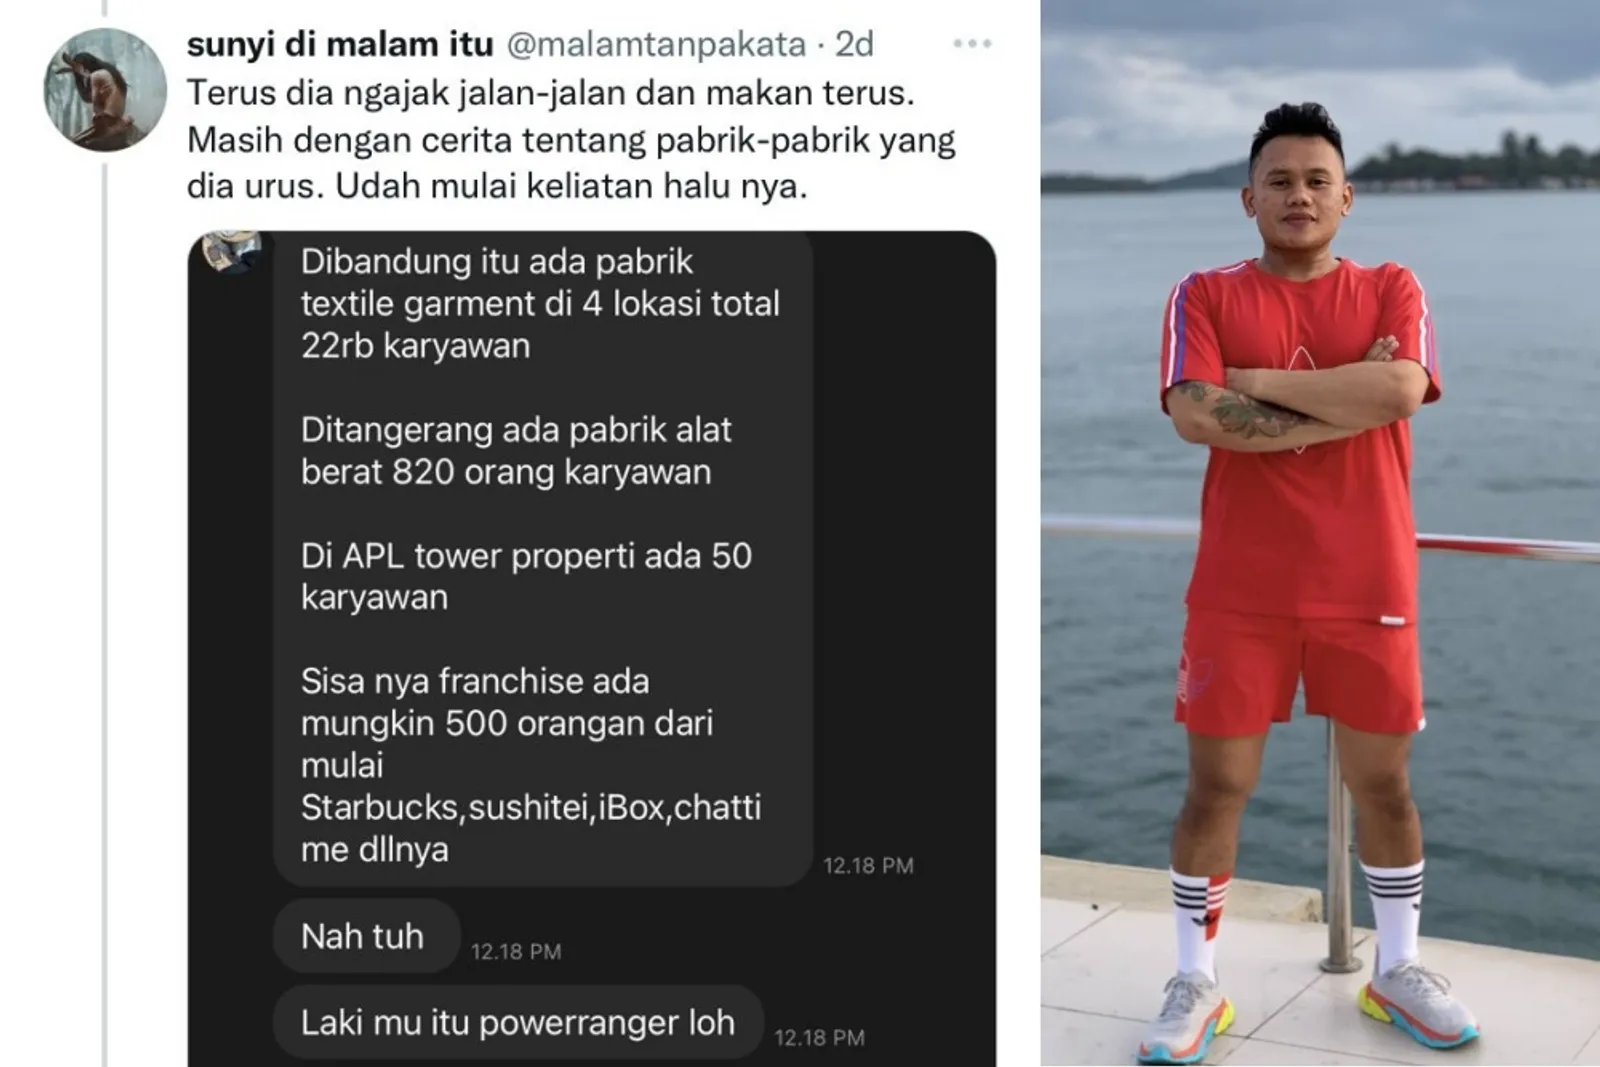 Viral di Twitter, Ini 5 Fakta Tinder Swindler Versi Indonesia